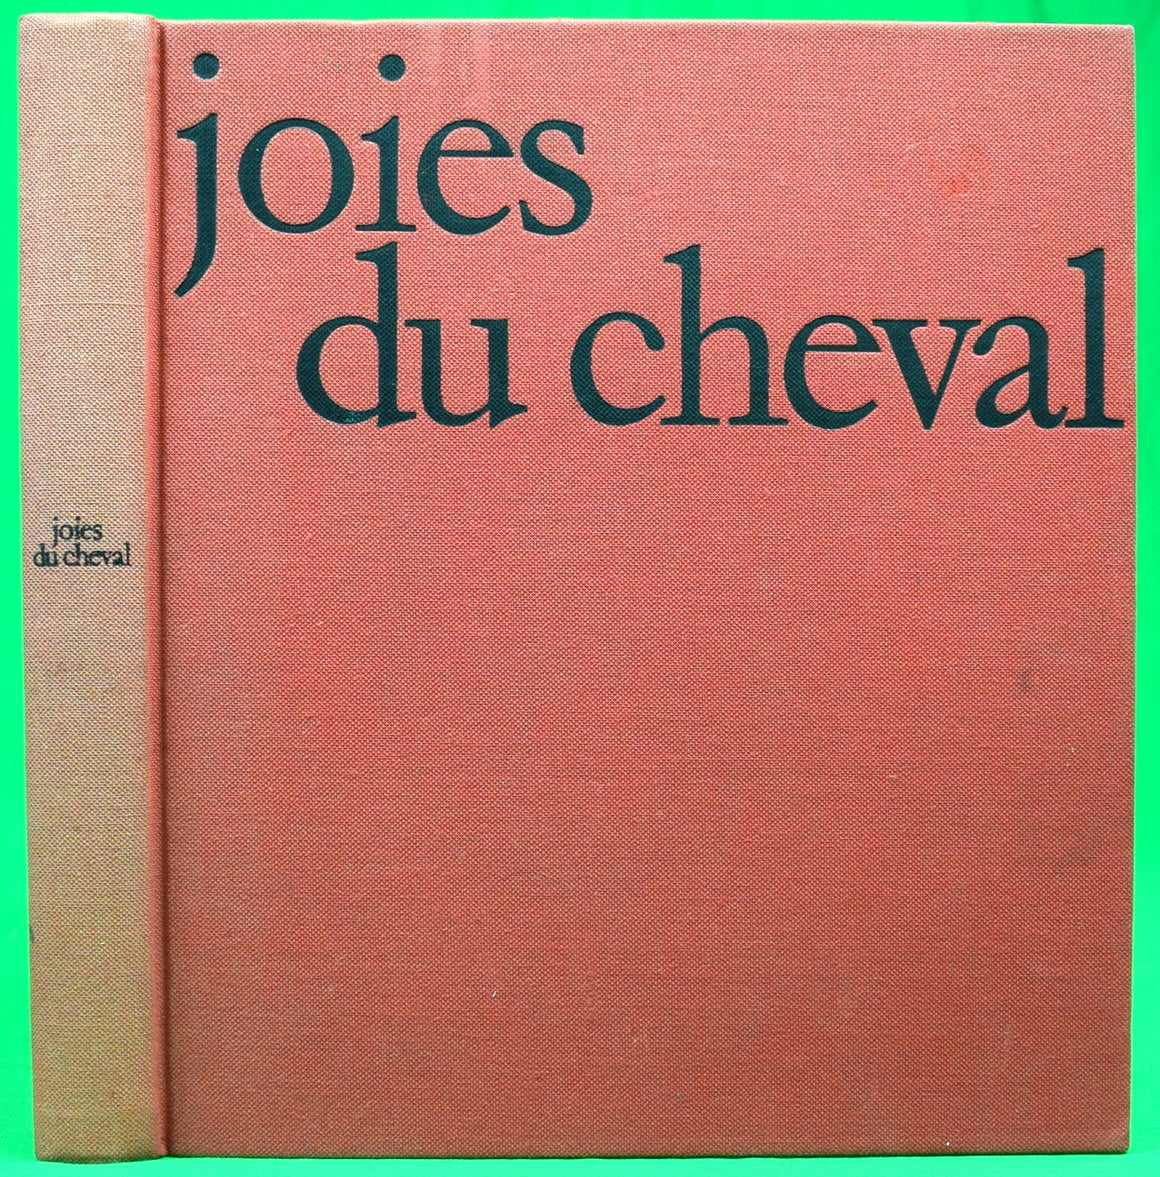 "Joies Du Cheval" 1969